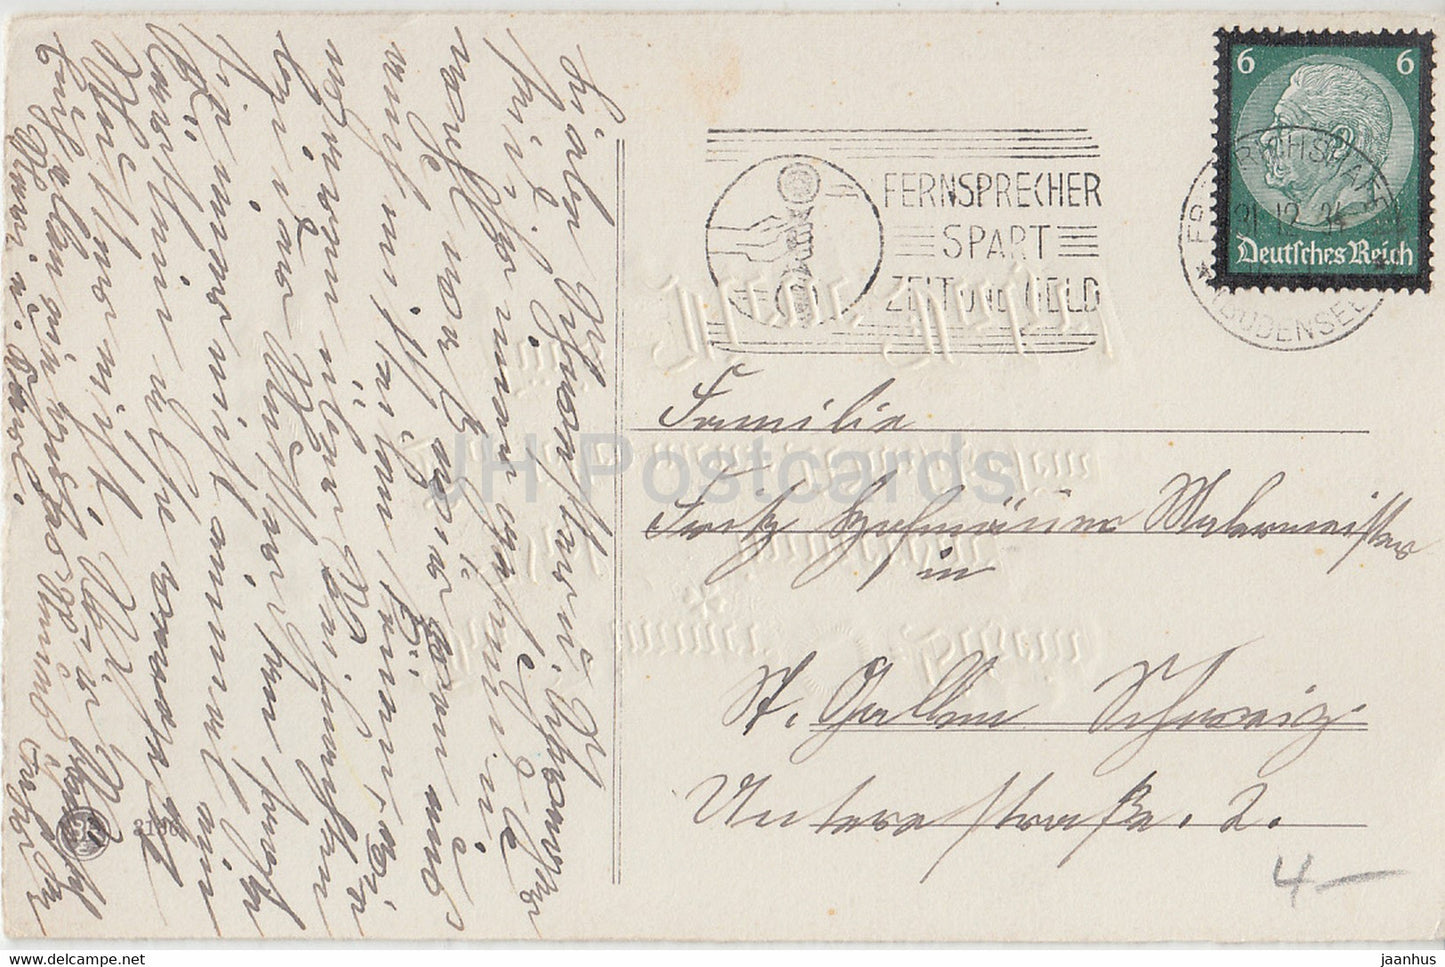 New Year Greeting Card - Das sollen meine Wunsche sein fur's Neue Jahr - BR 3136 - old postcard - 1934 - Germany - used